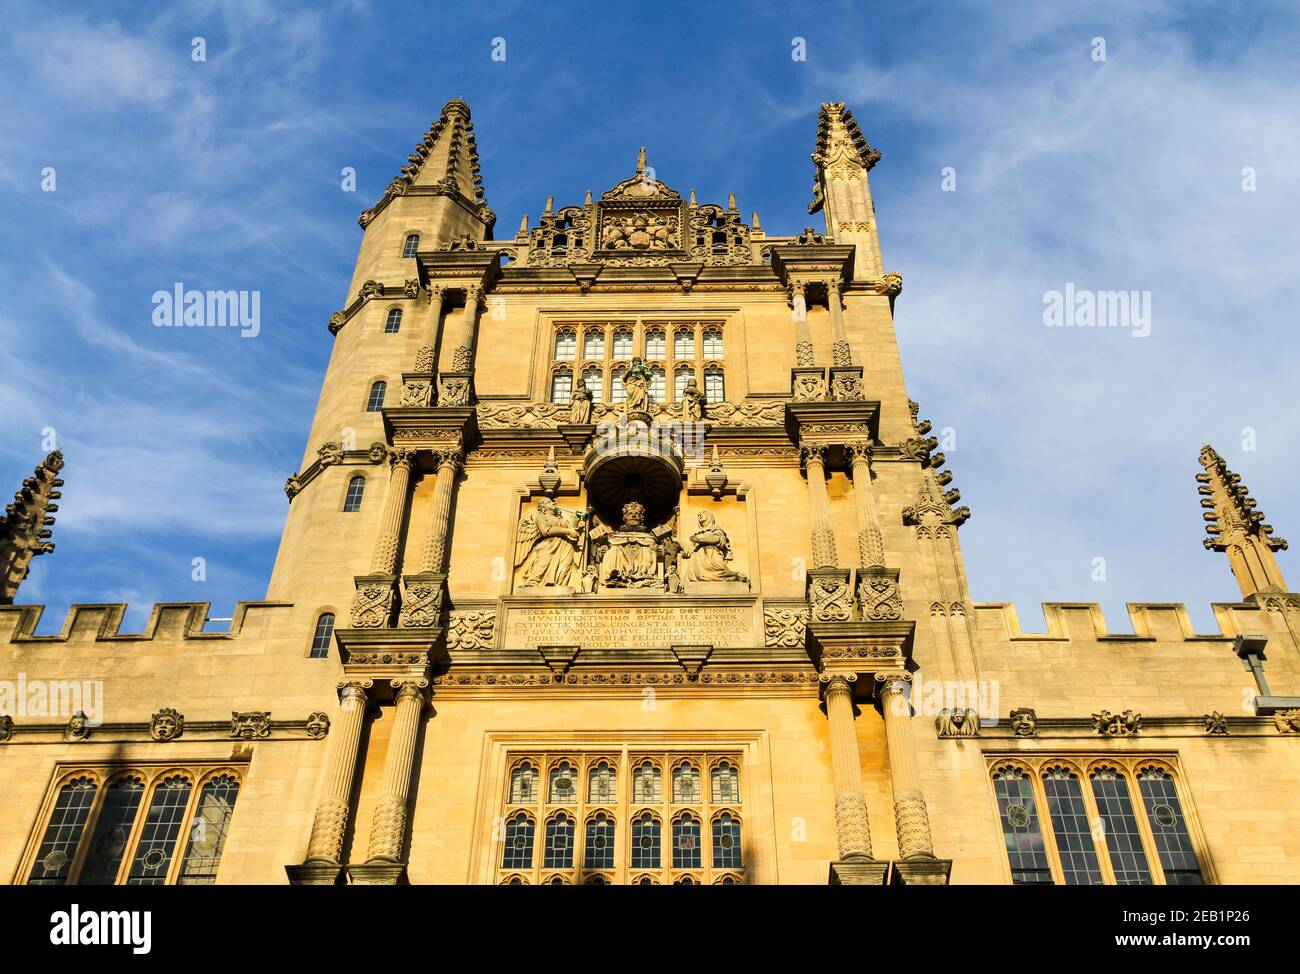 La Torre de las cinco órdenes, Biblioteca Bodleian Old Schools Quad. Principal biblioteca de investigación de la Universidad de Oxford. Cinco órdenes de arquitectura clásica Foto de stock